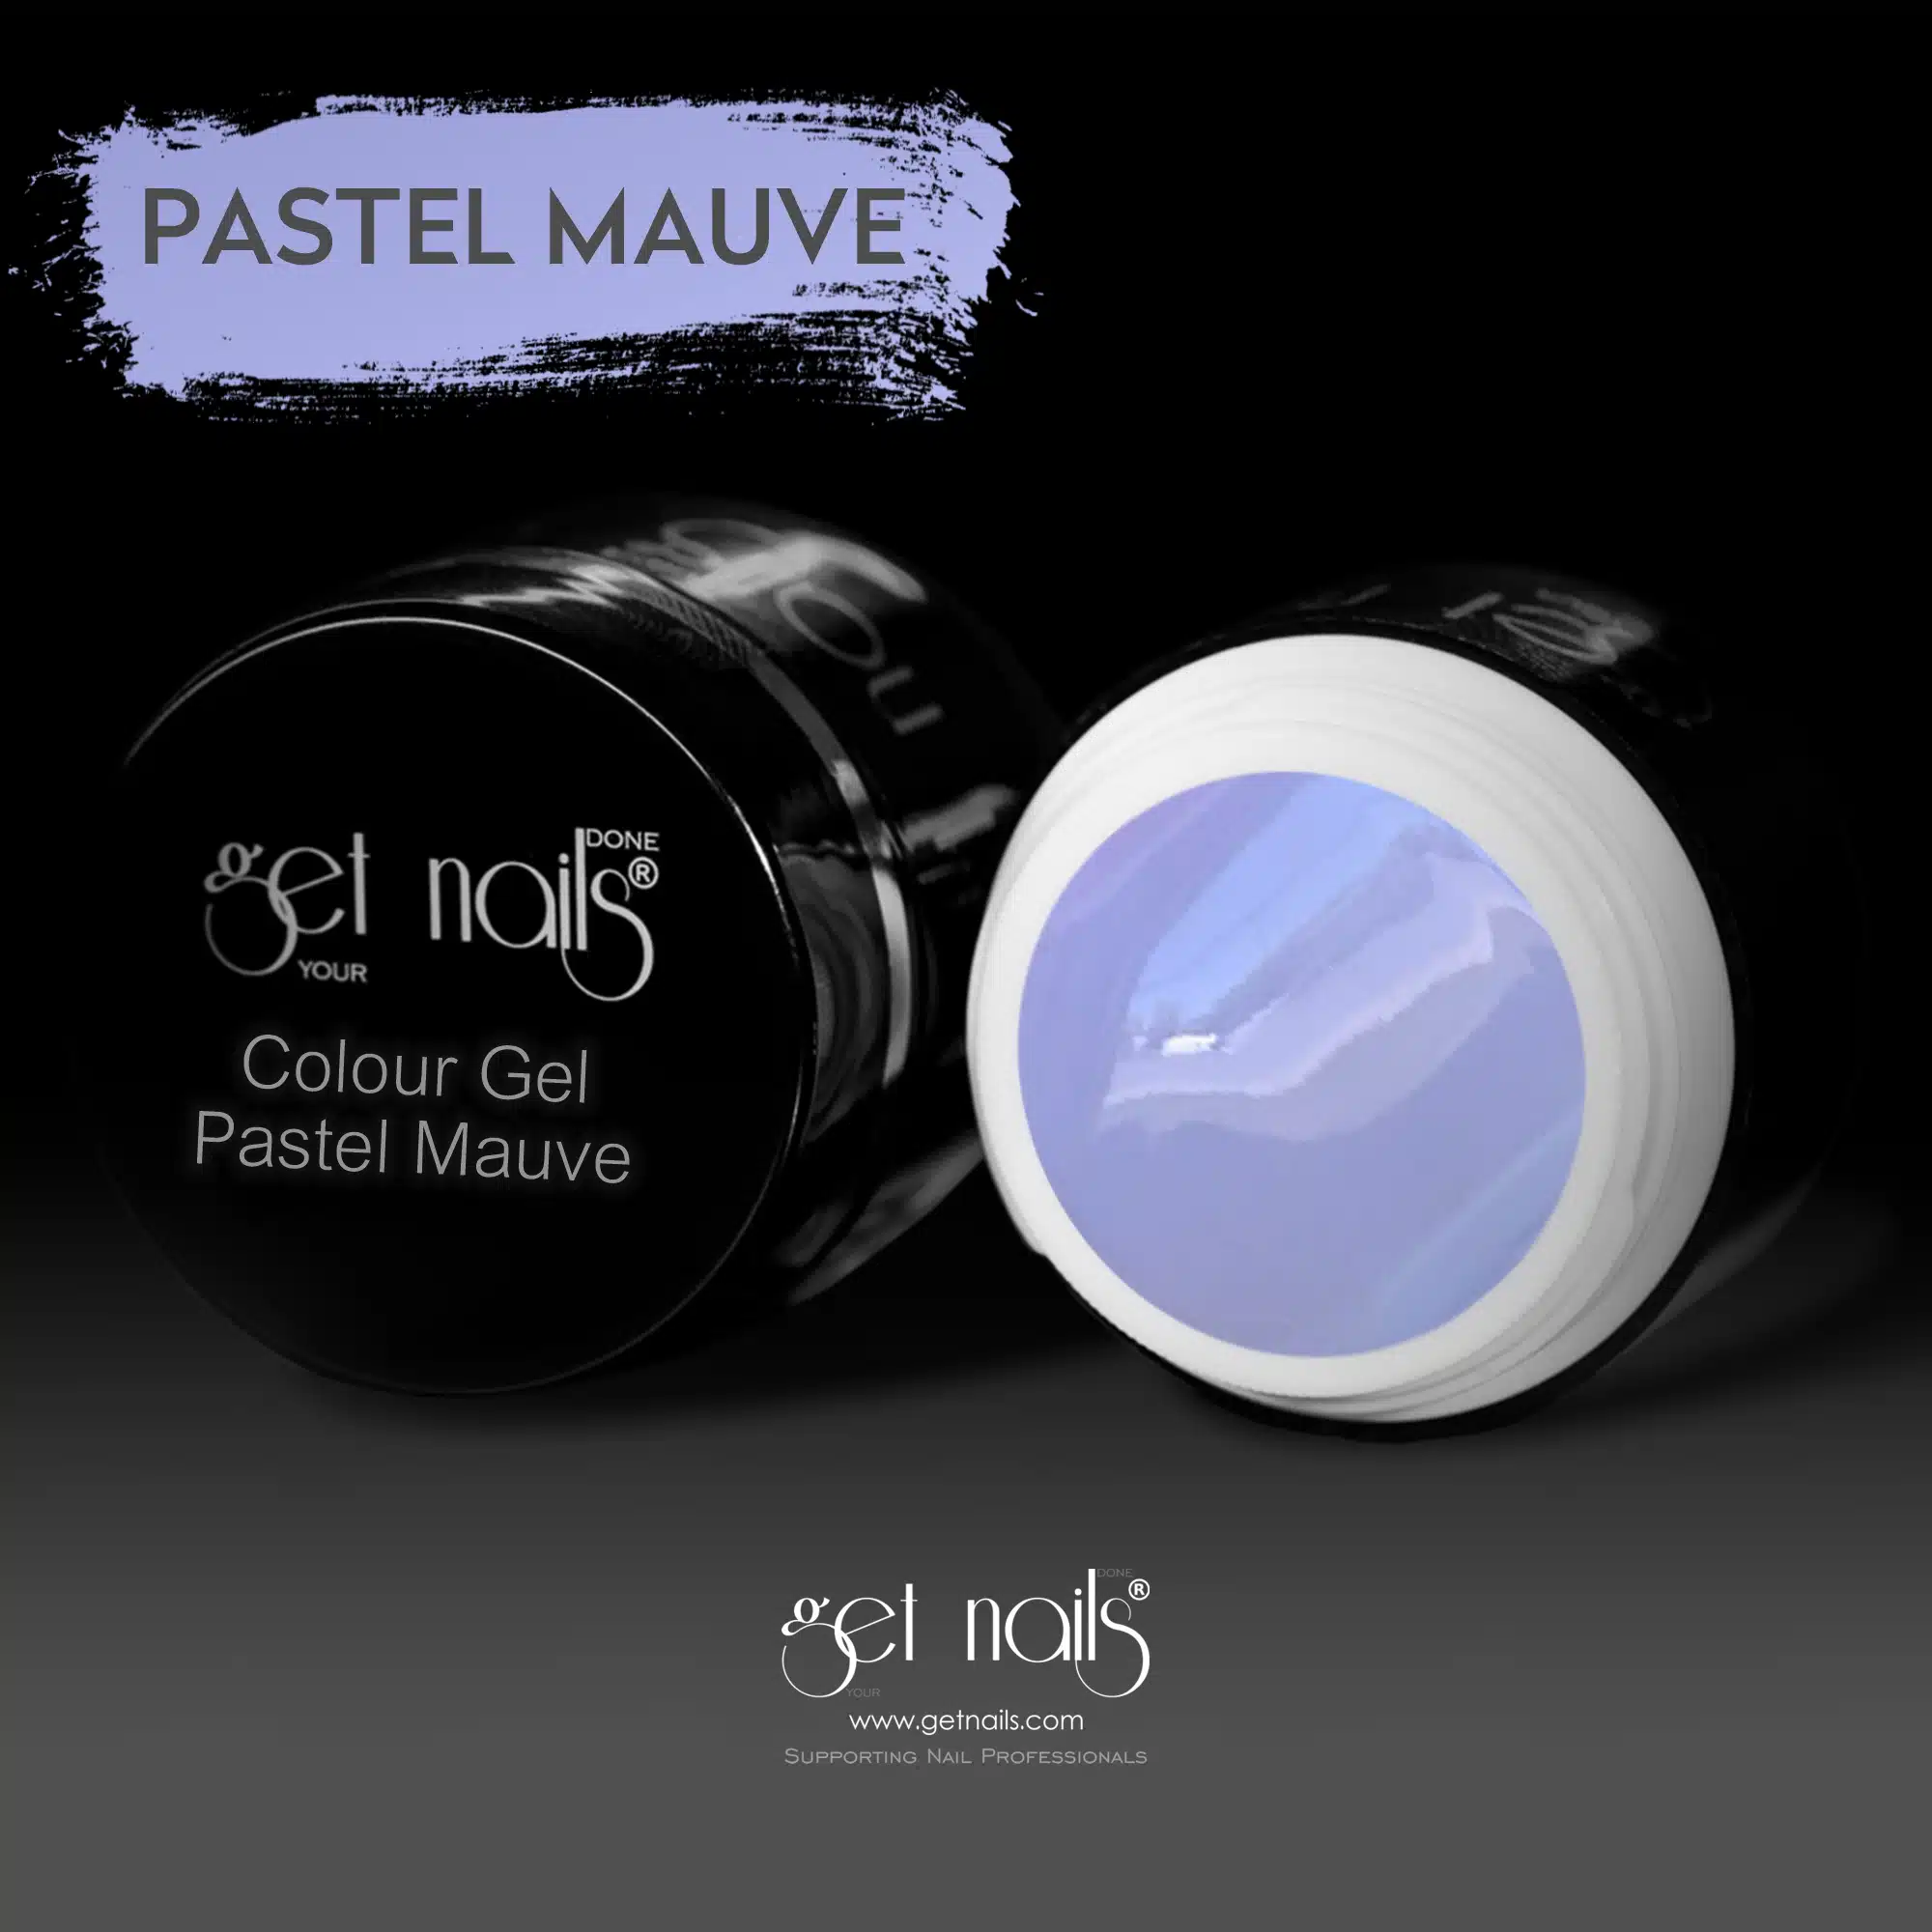 Get Nails Austria - Gel colorato Pastel Mauve 5g